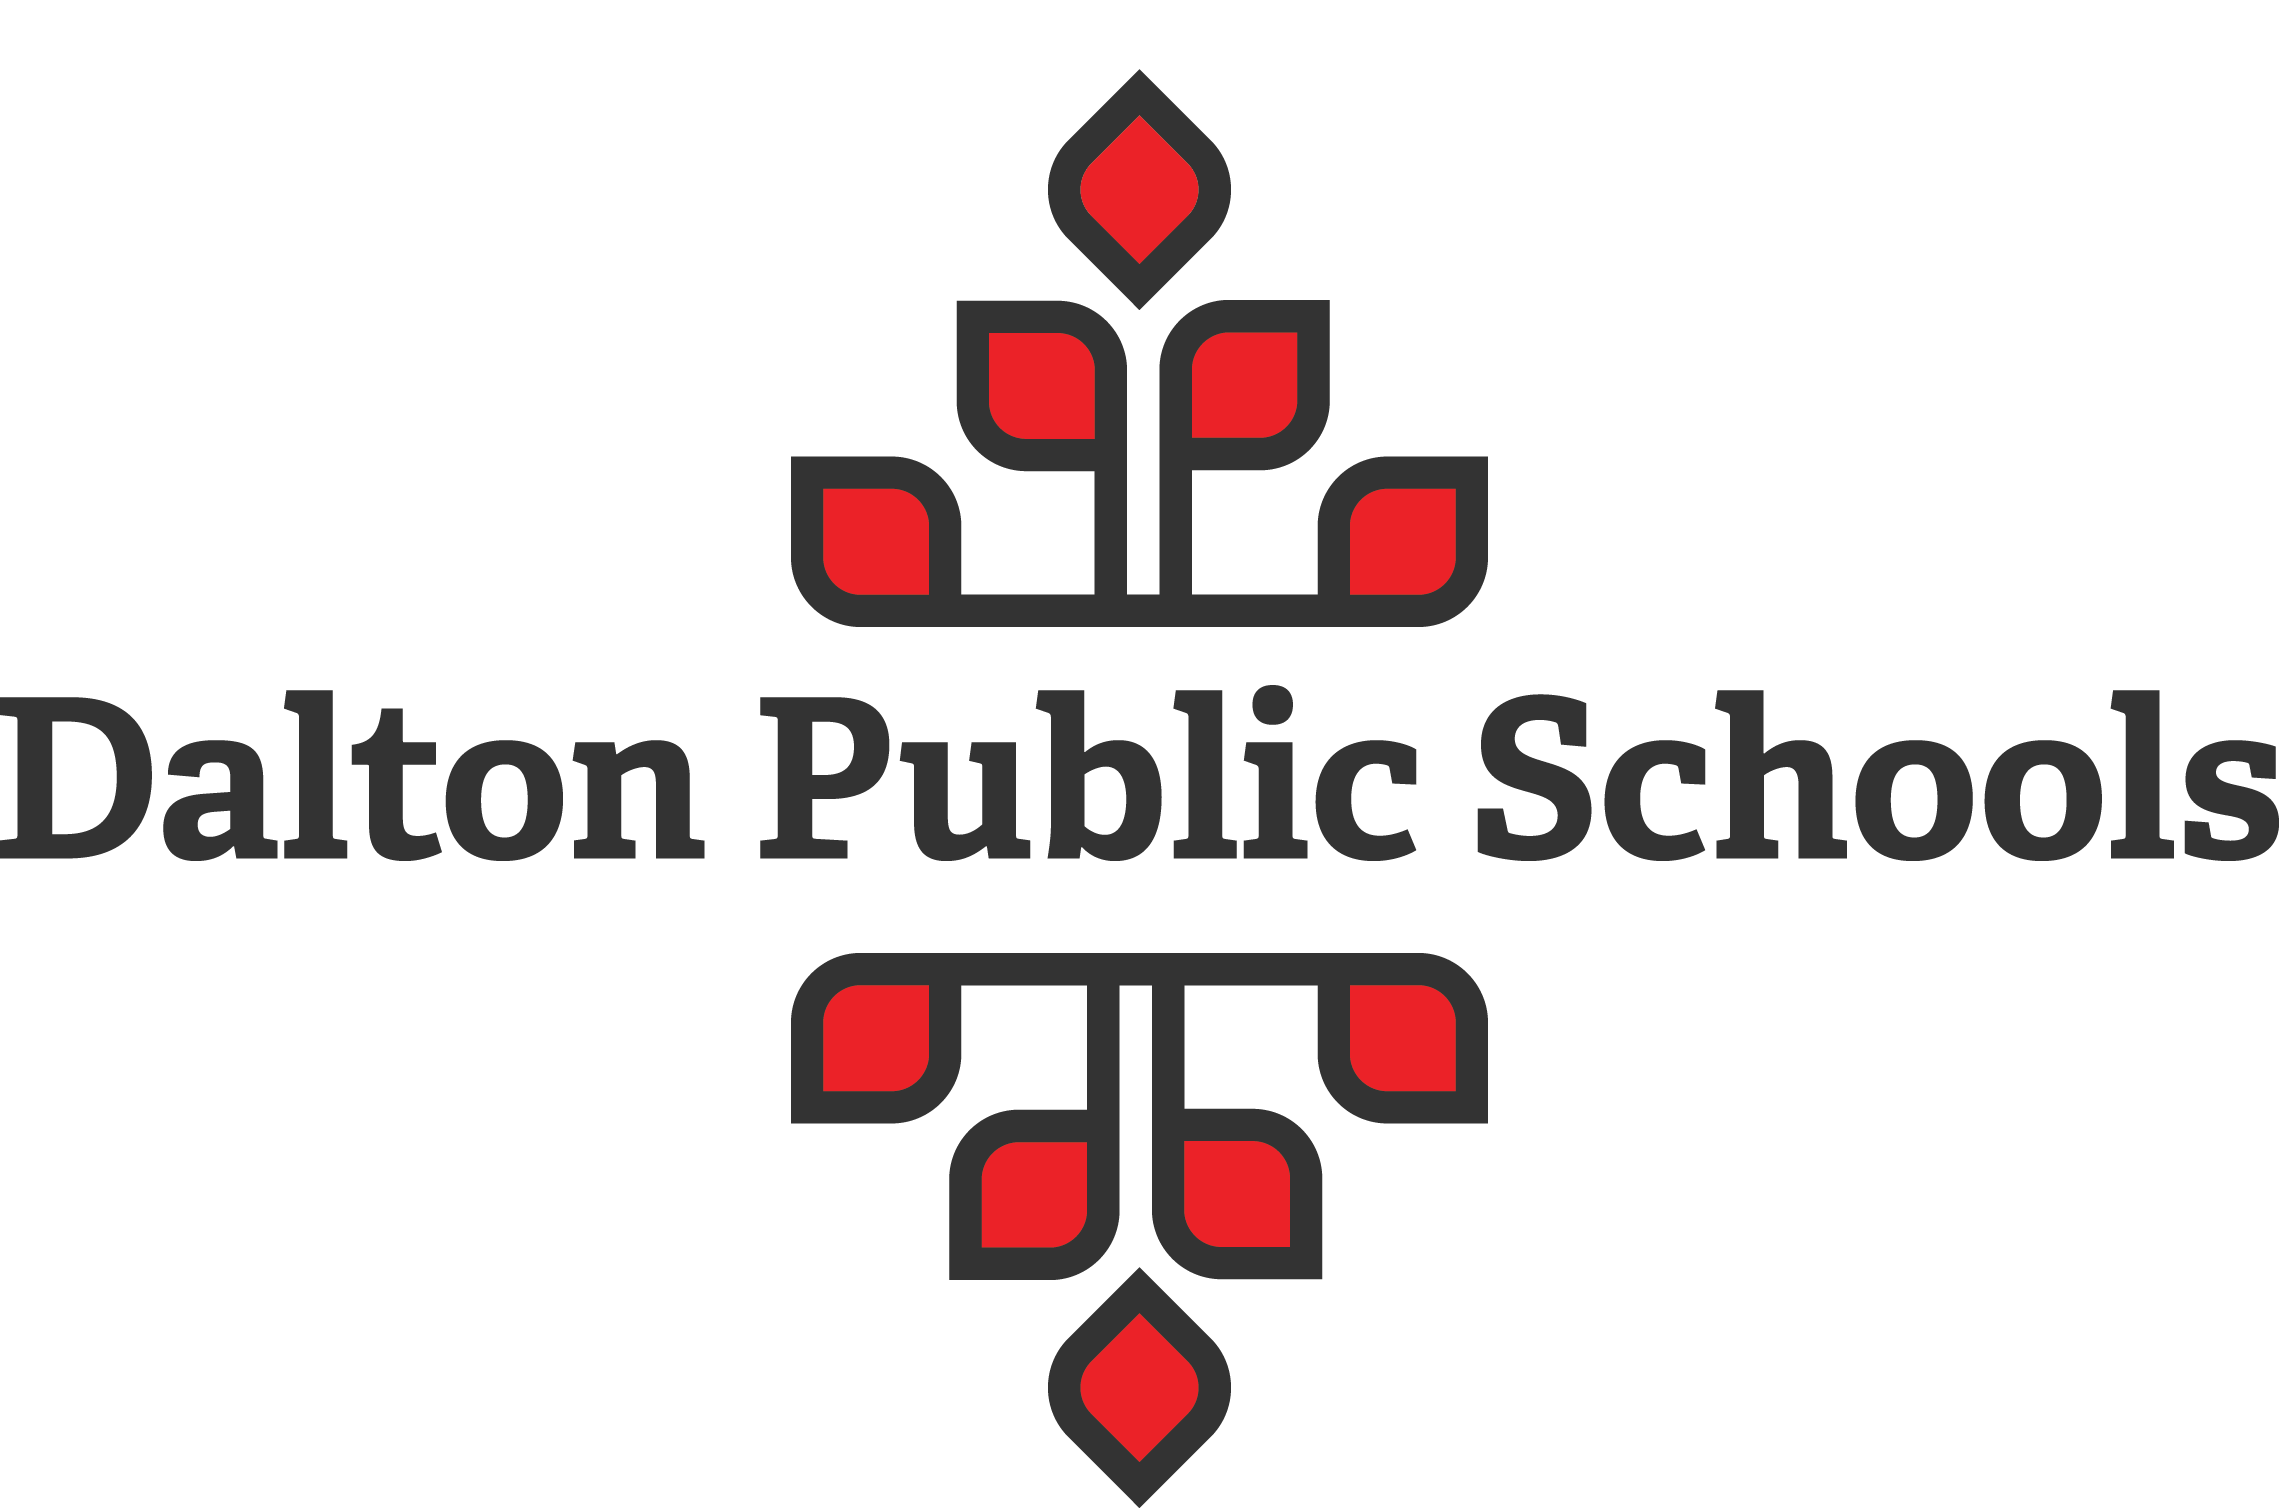 School Handbook - Dalton Public Schools